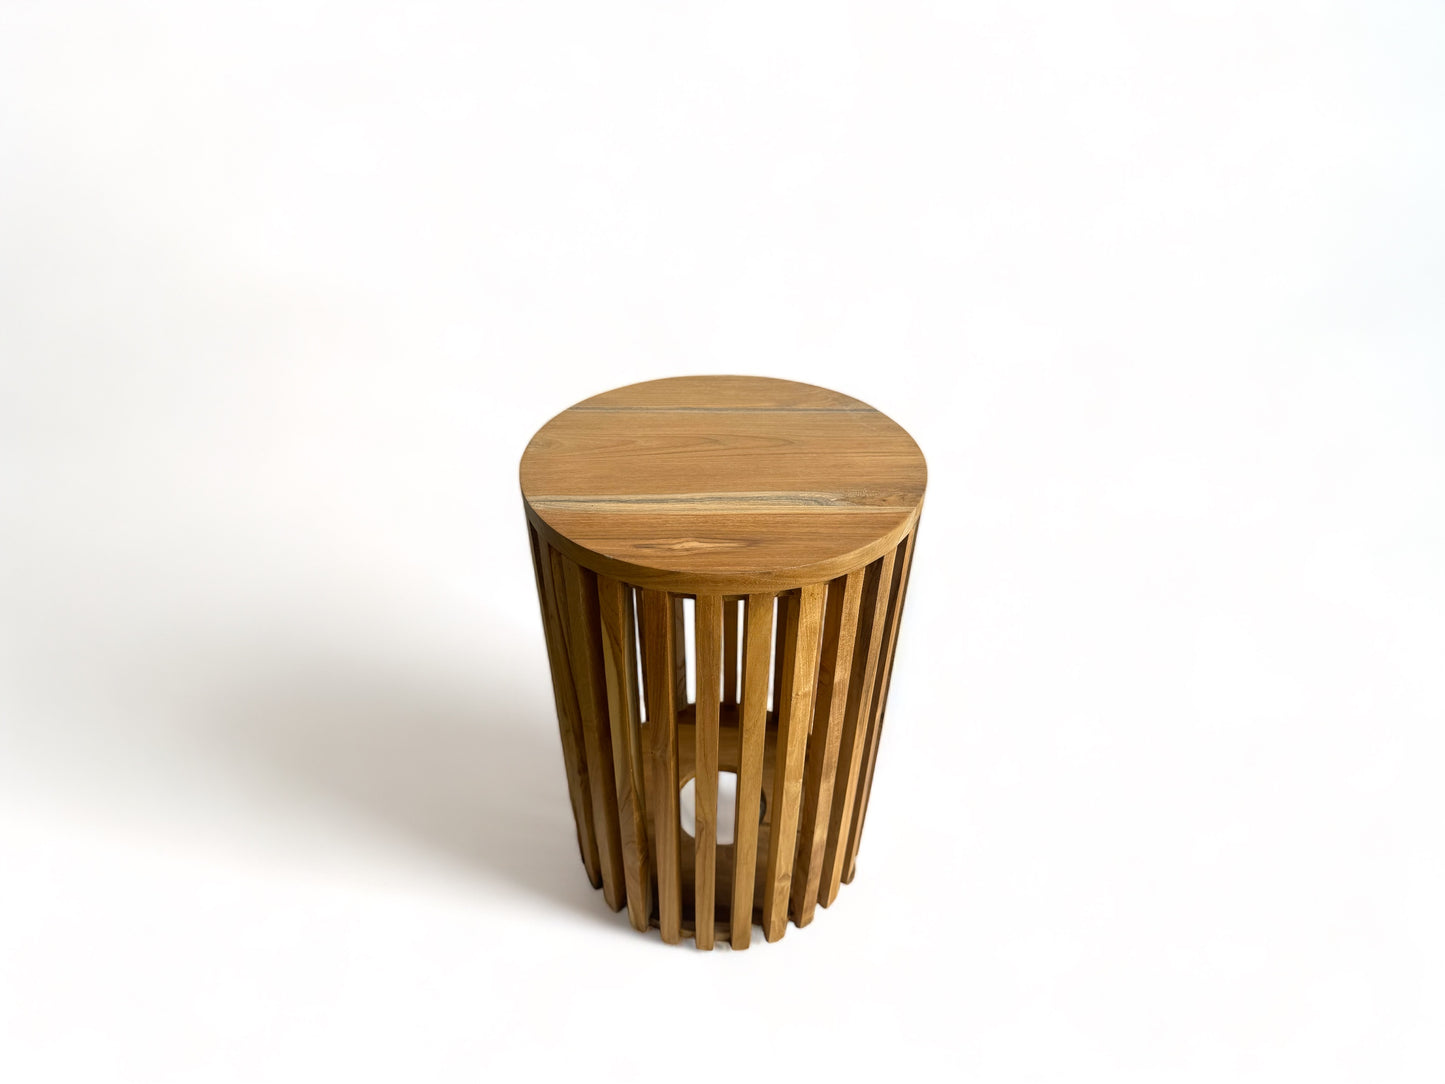 Teakholz-Beistelltisch - Holzhocker Couchtisch - Handgefertigt aus Massivholz – Holzleisten Rund - 50x30x30 cm